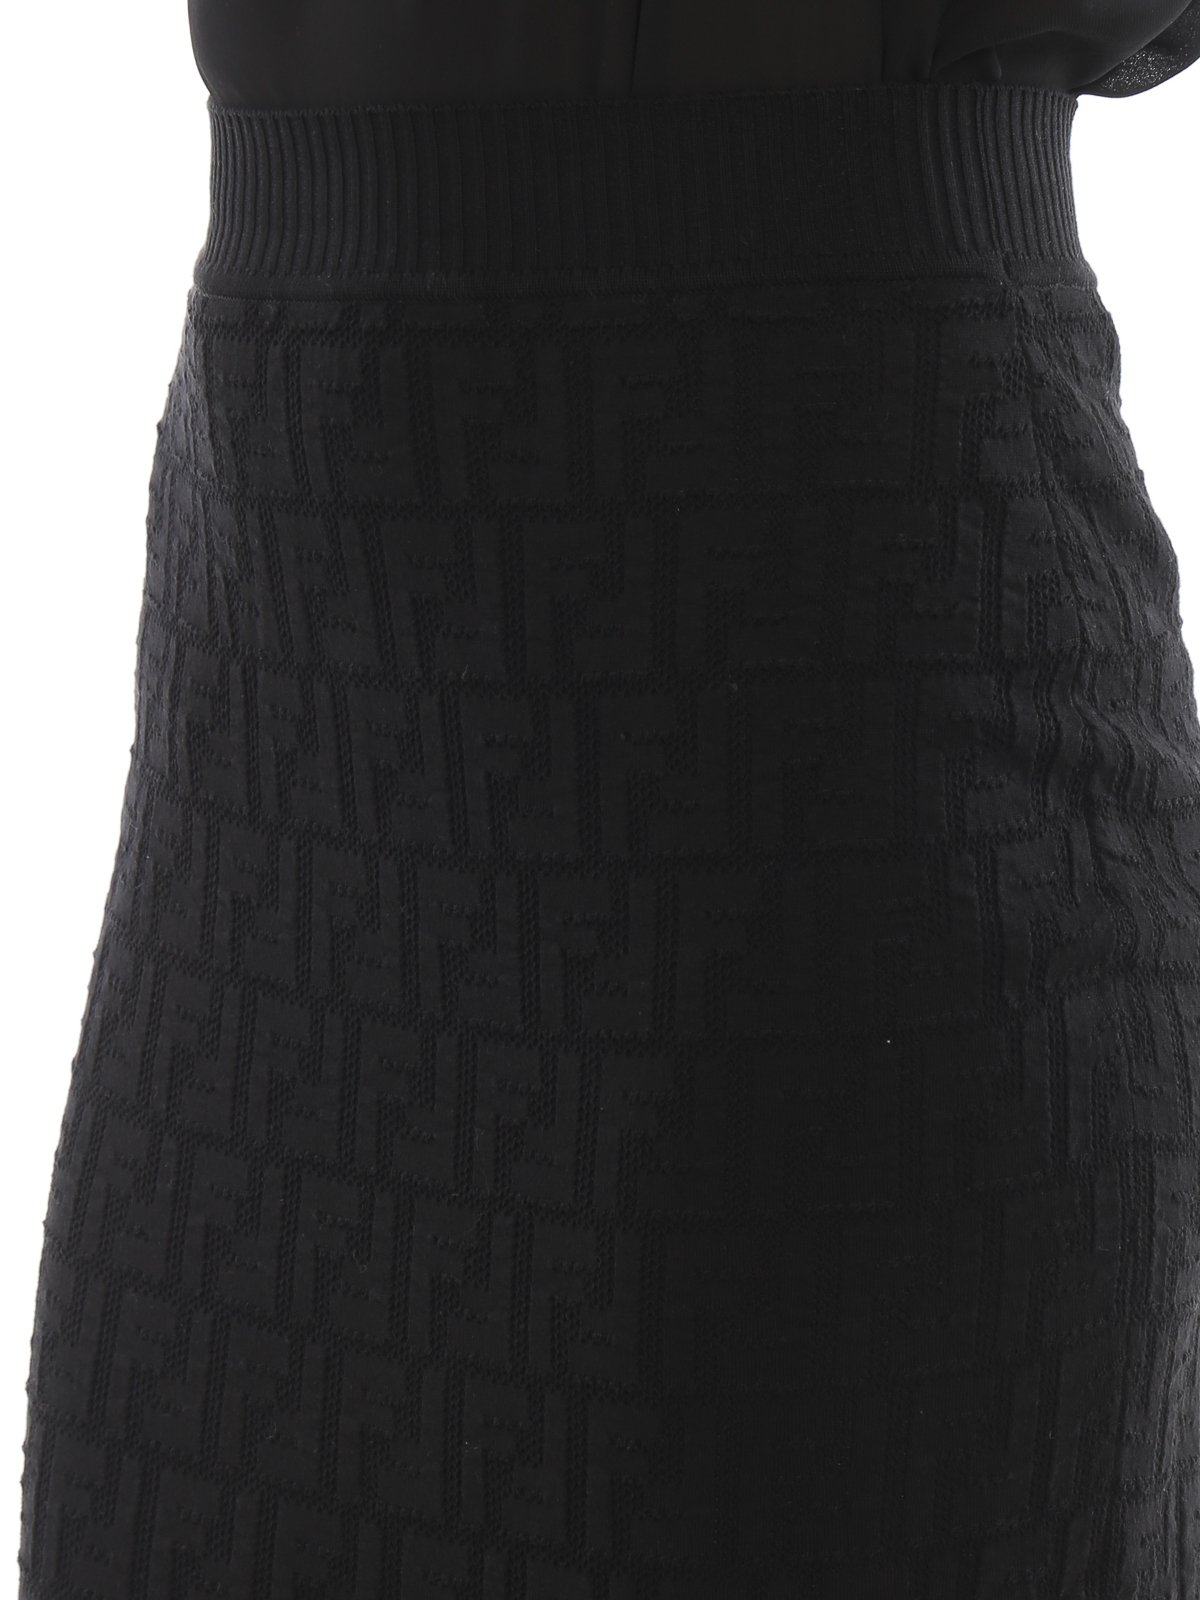 fendi black skirt